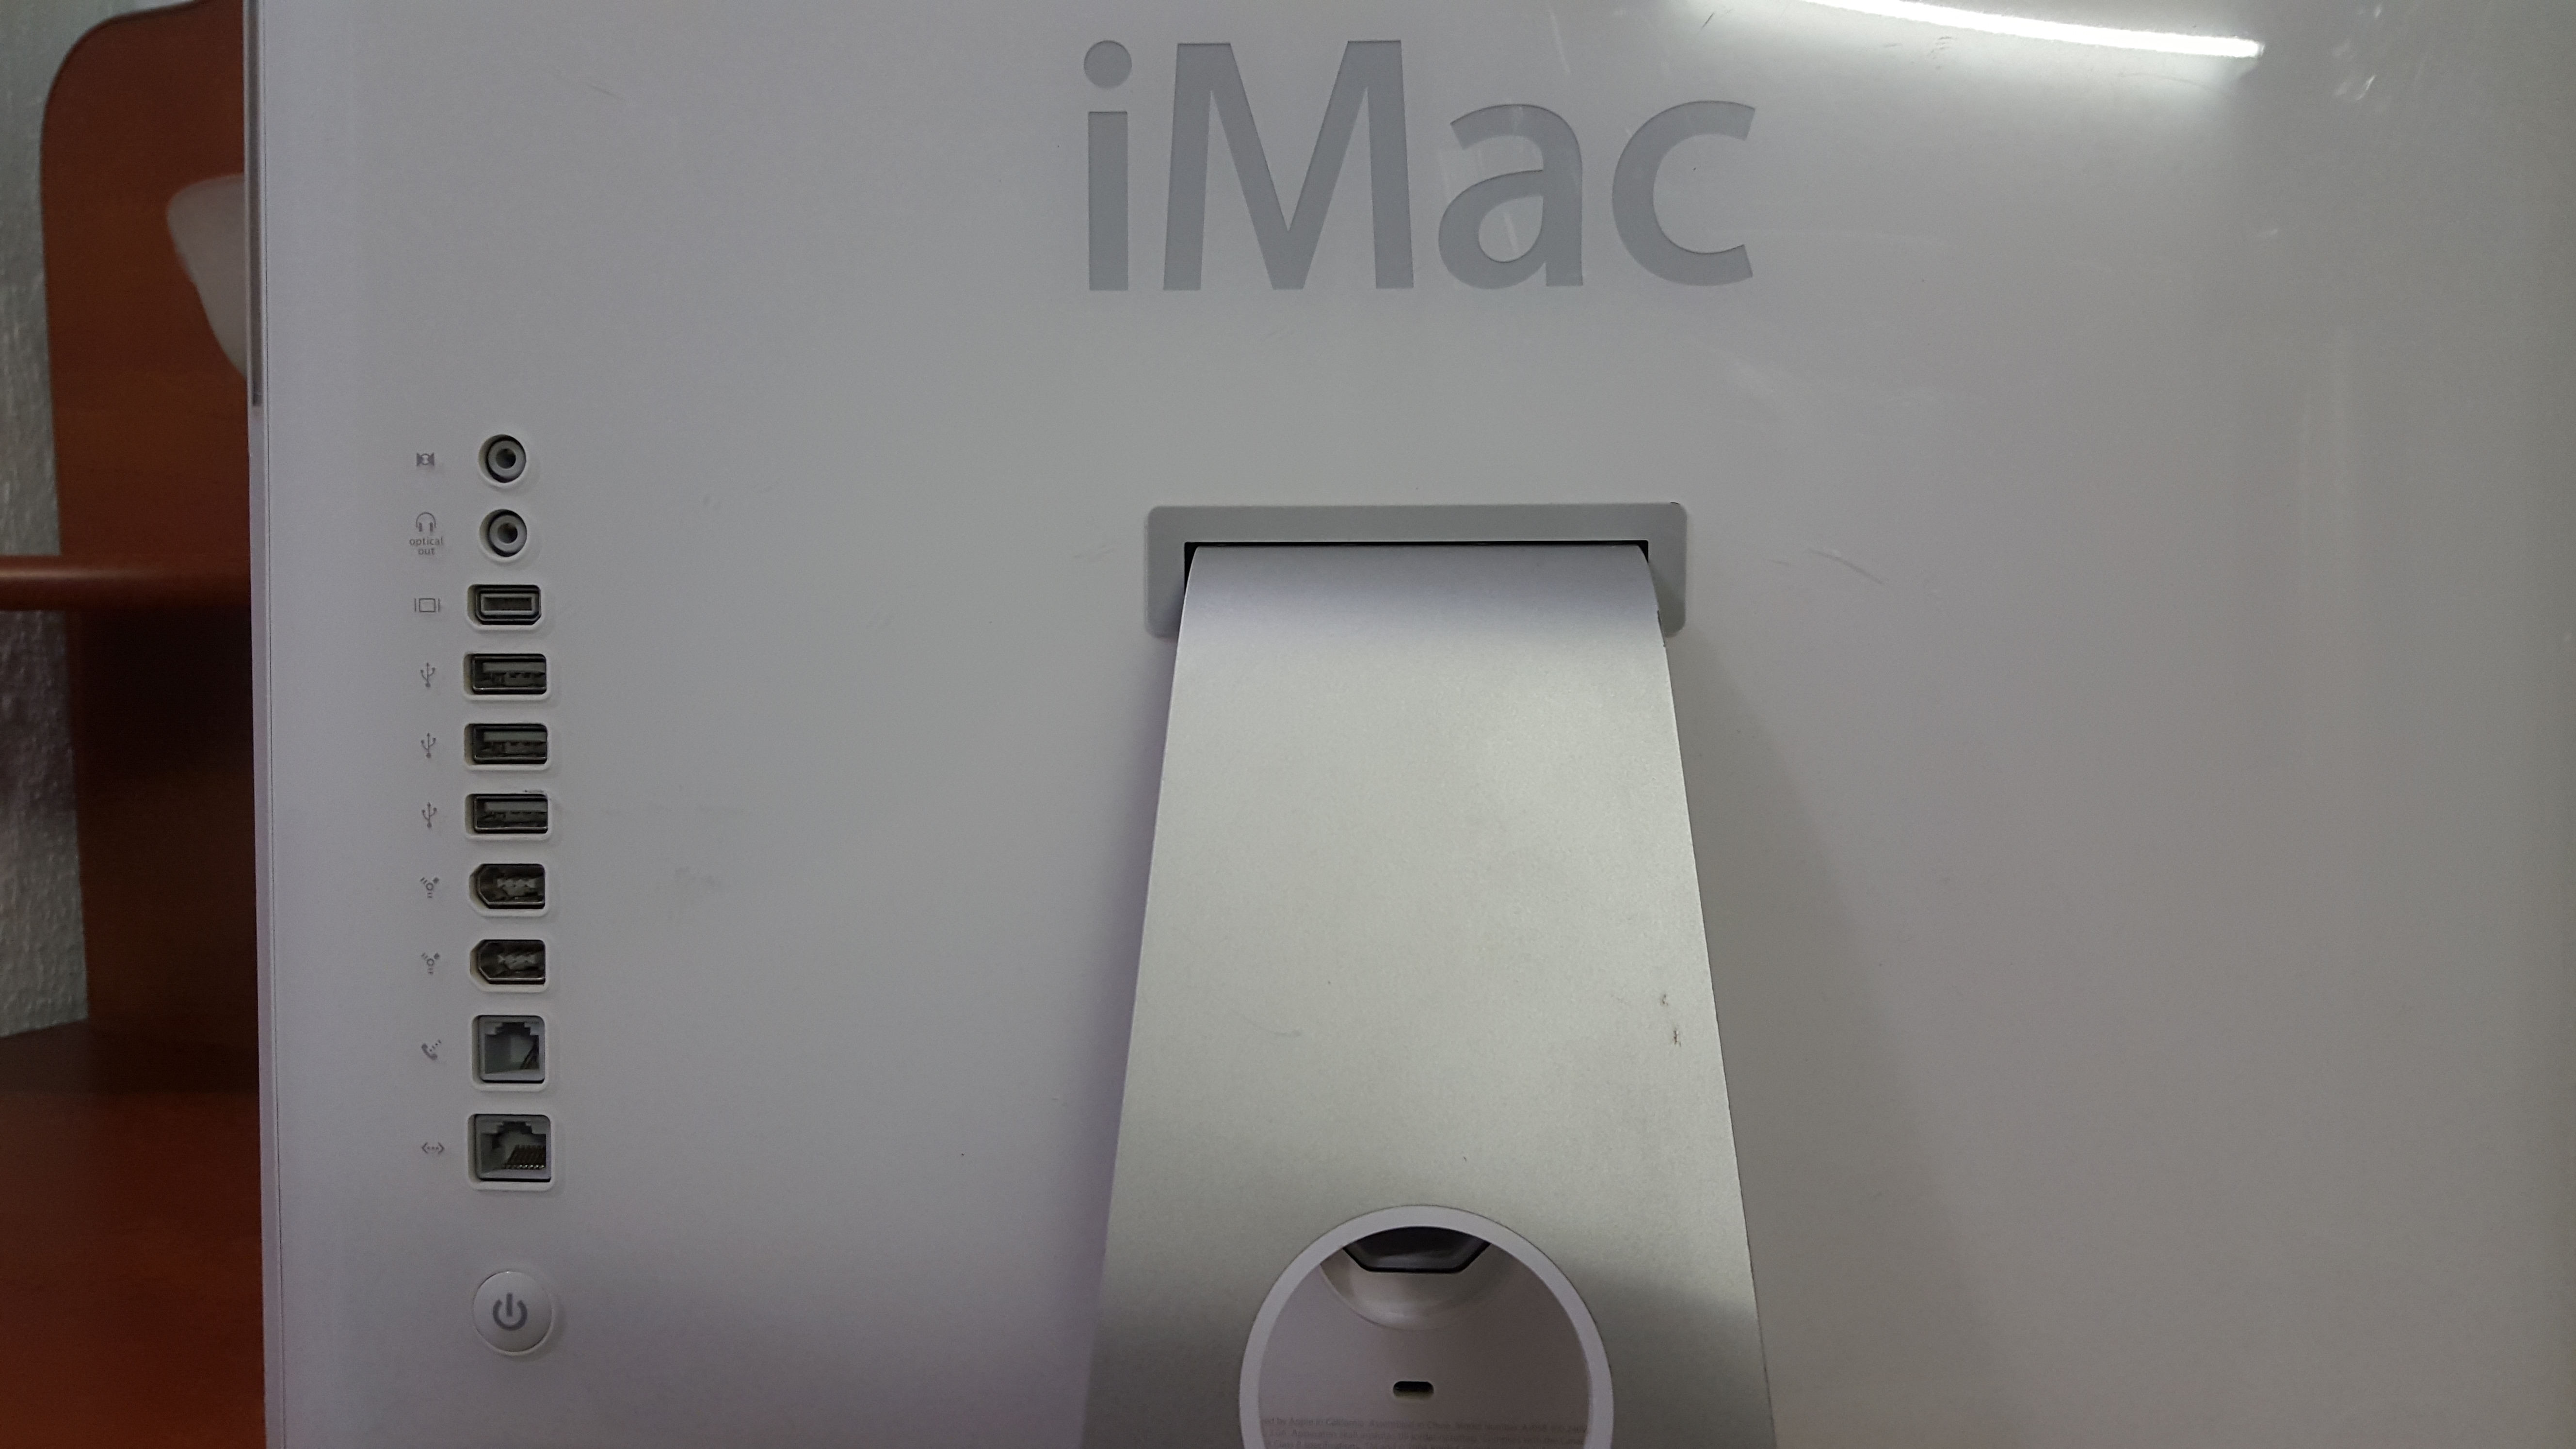 Моноблок 17' iMac G5 Model A1058